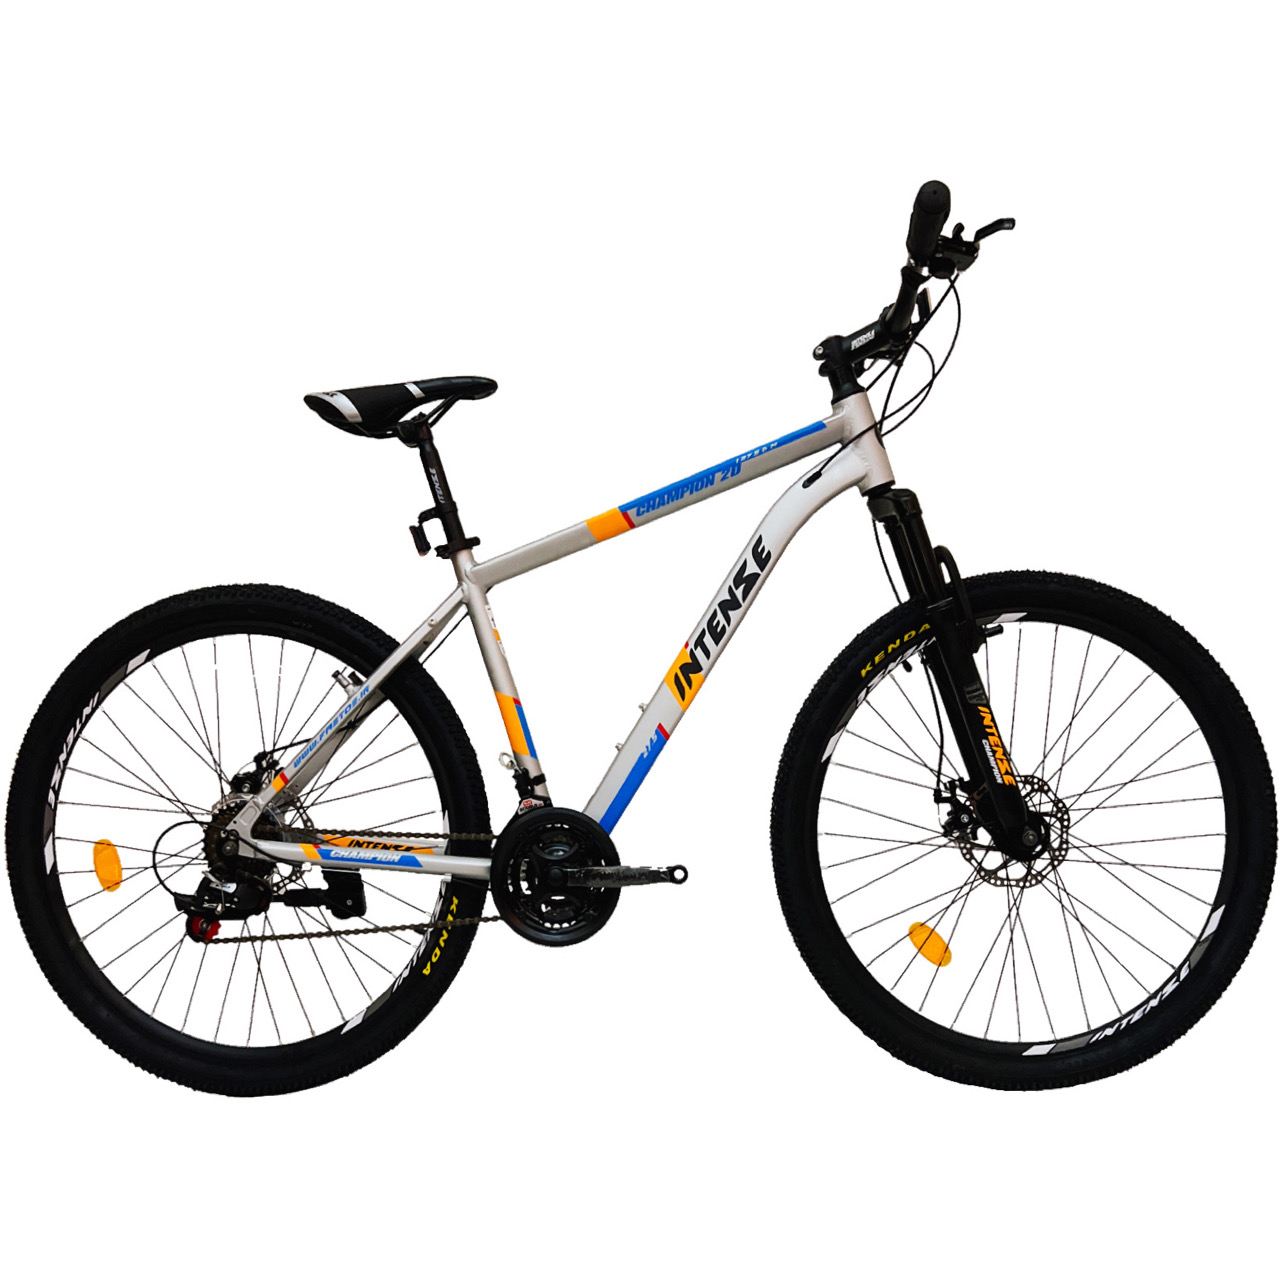 نکته خرید - قیمت روز دوچرخه کوهستان اینتنس مدل CHAMPION 2D سایز 27.5 خرید